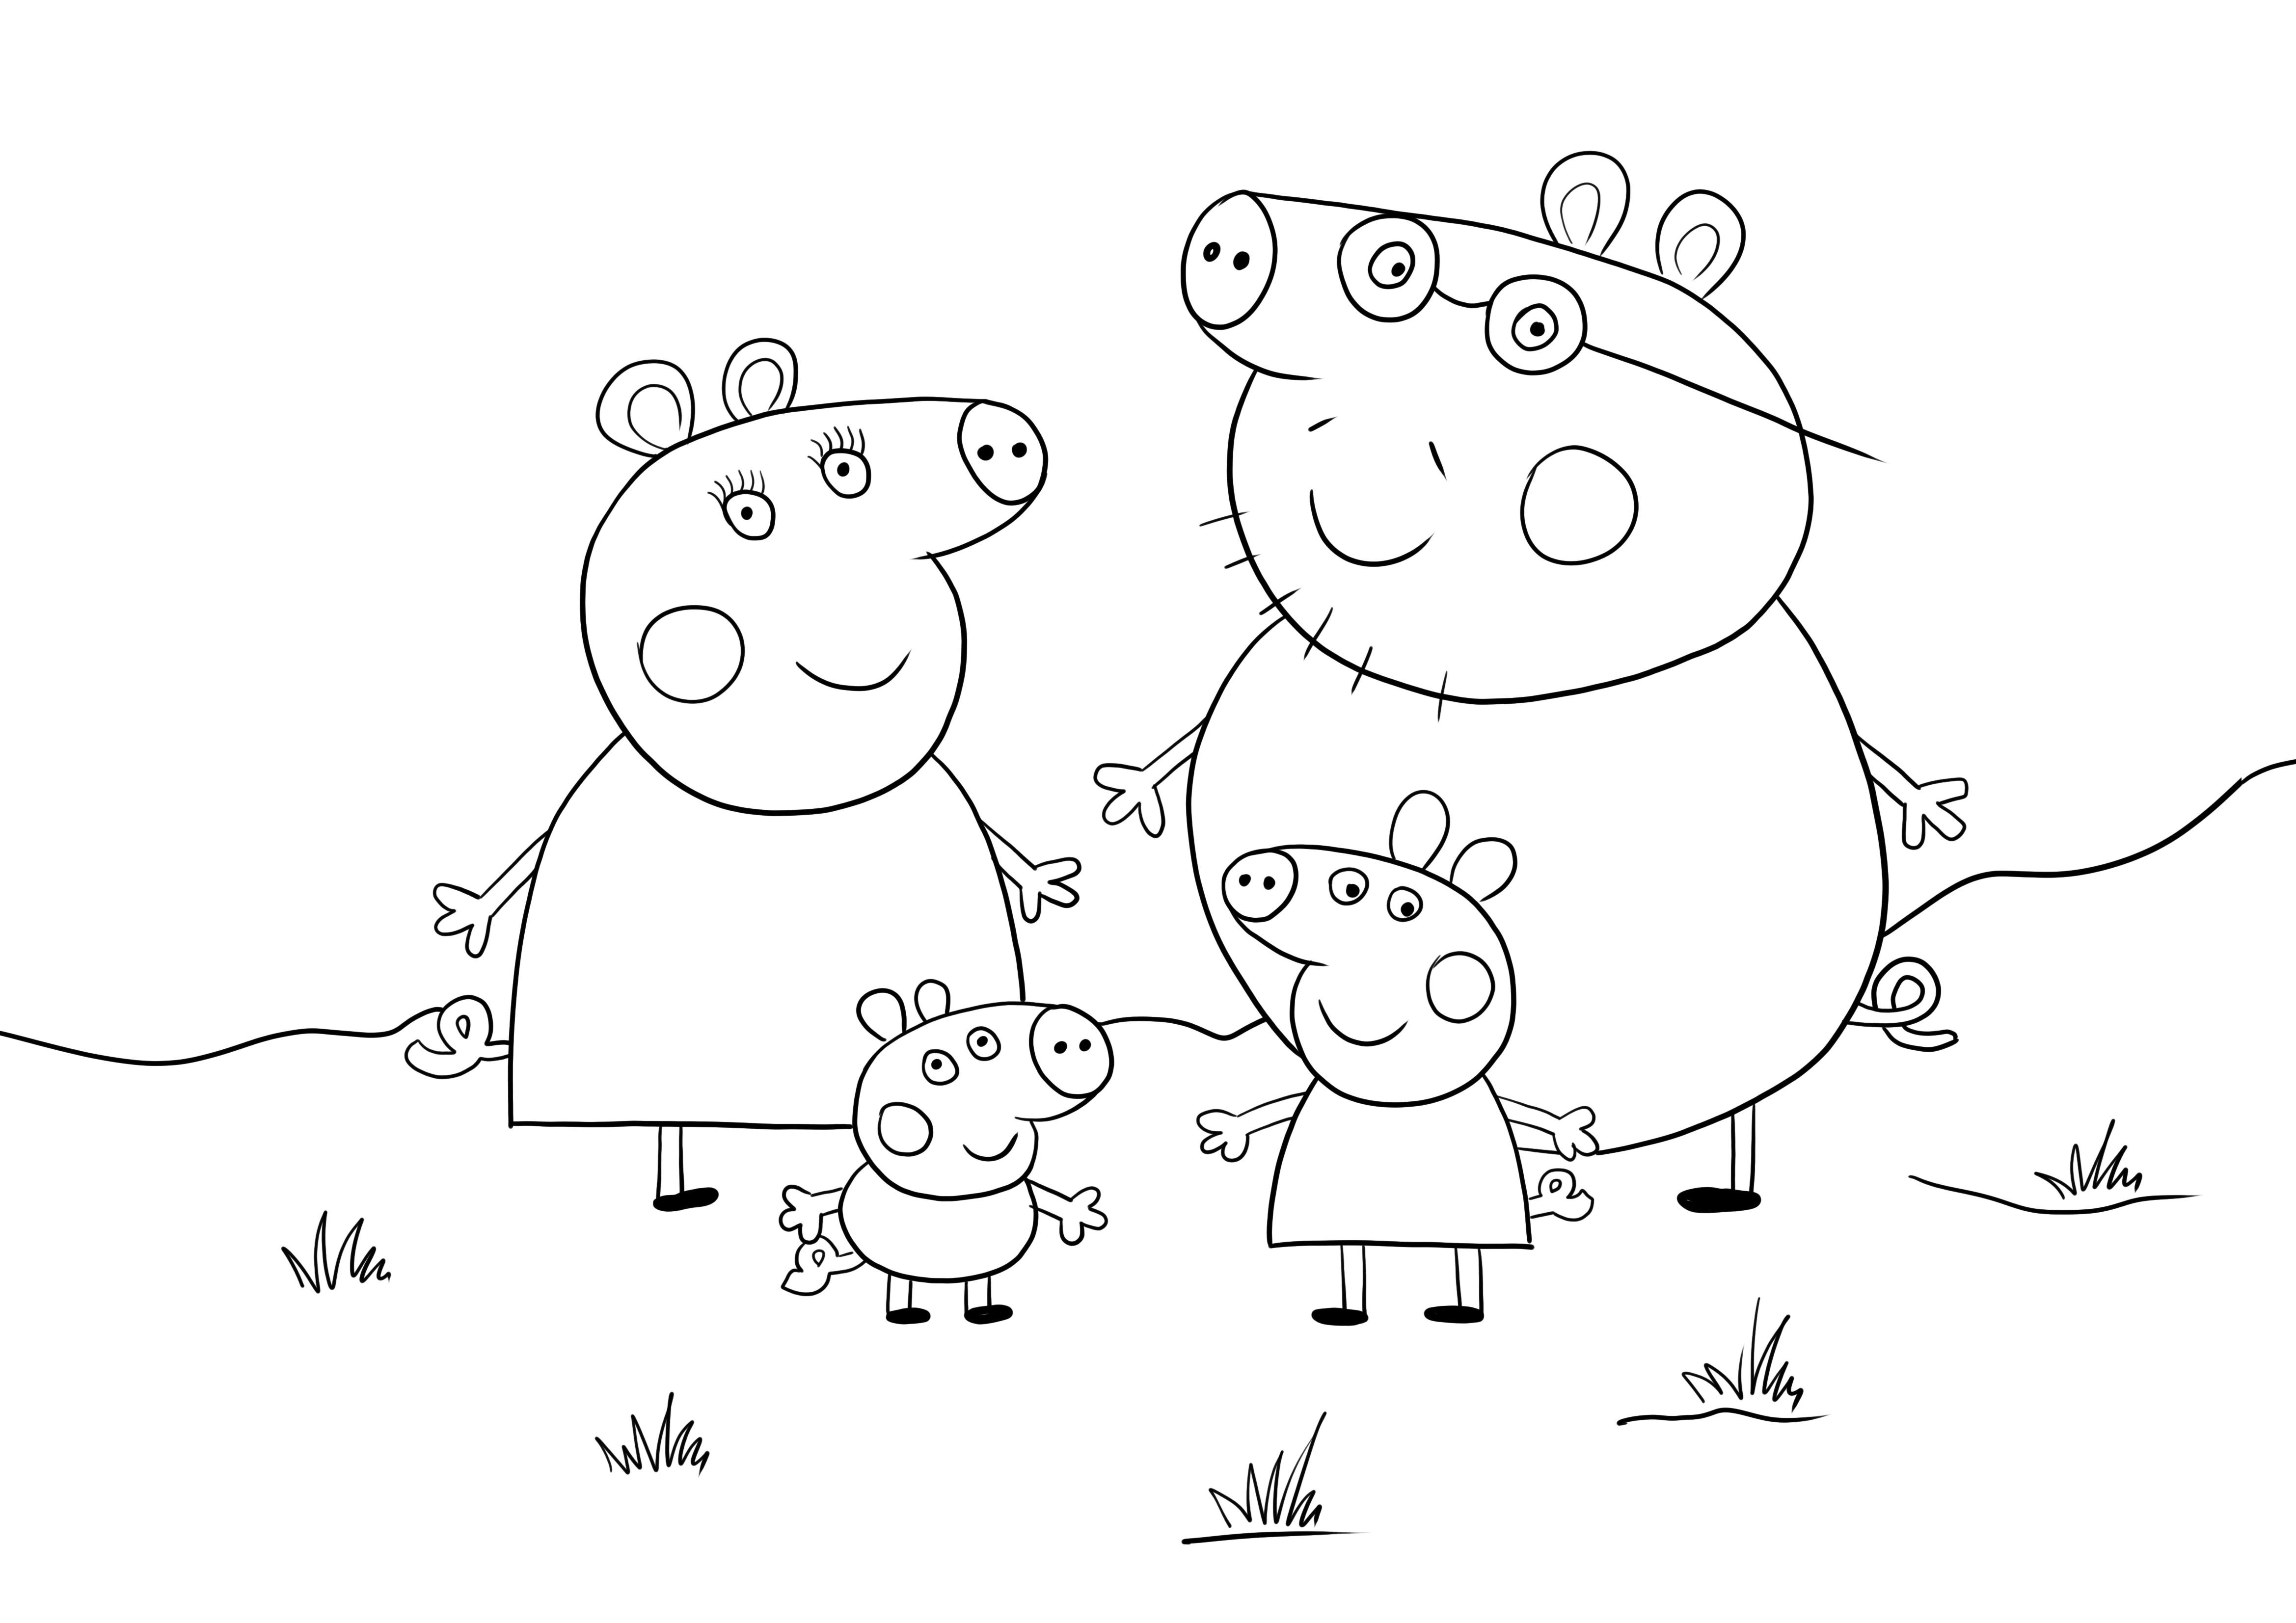 Famiglia Peppa Pig stampabile gratuitamente per un'immagine facile da colorare